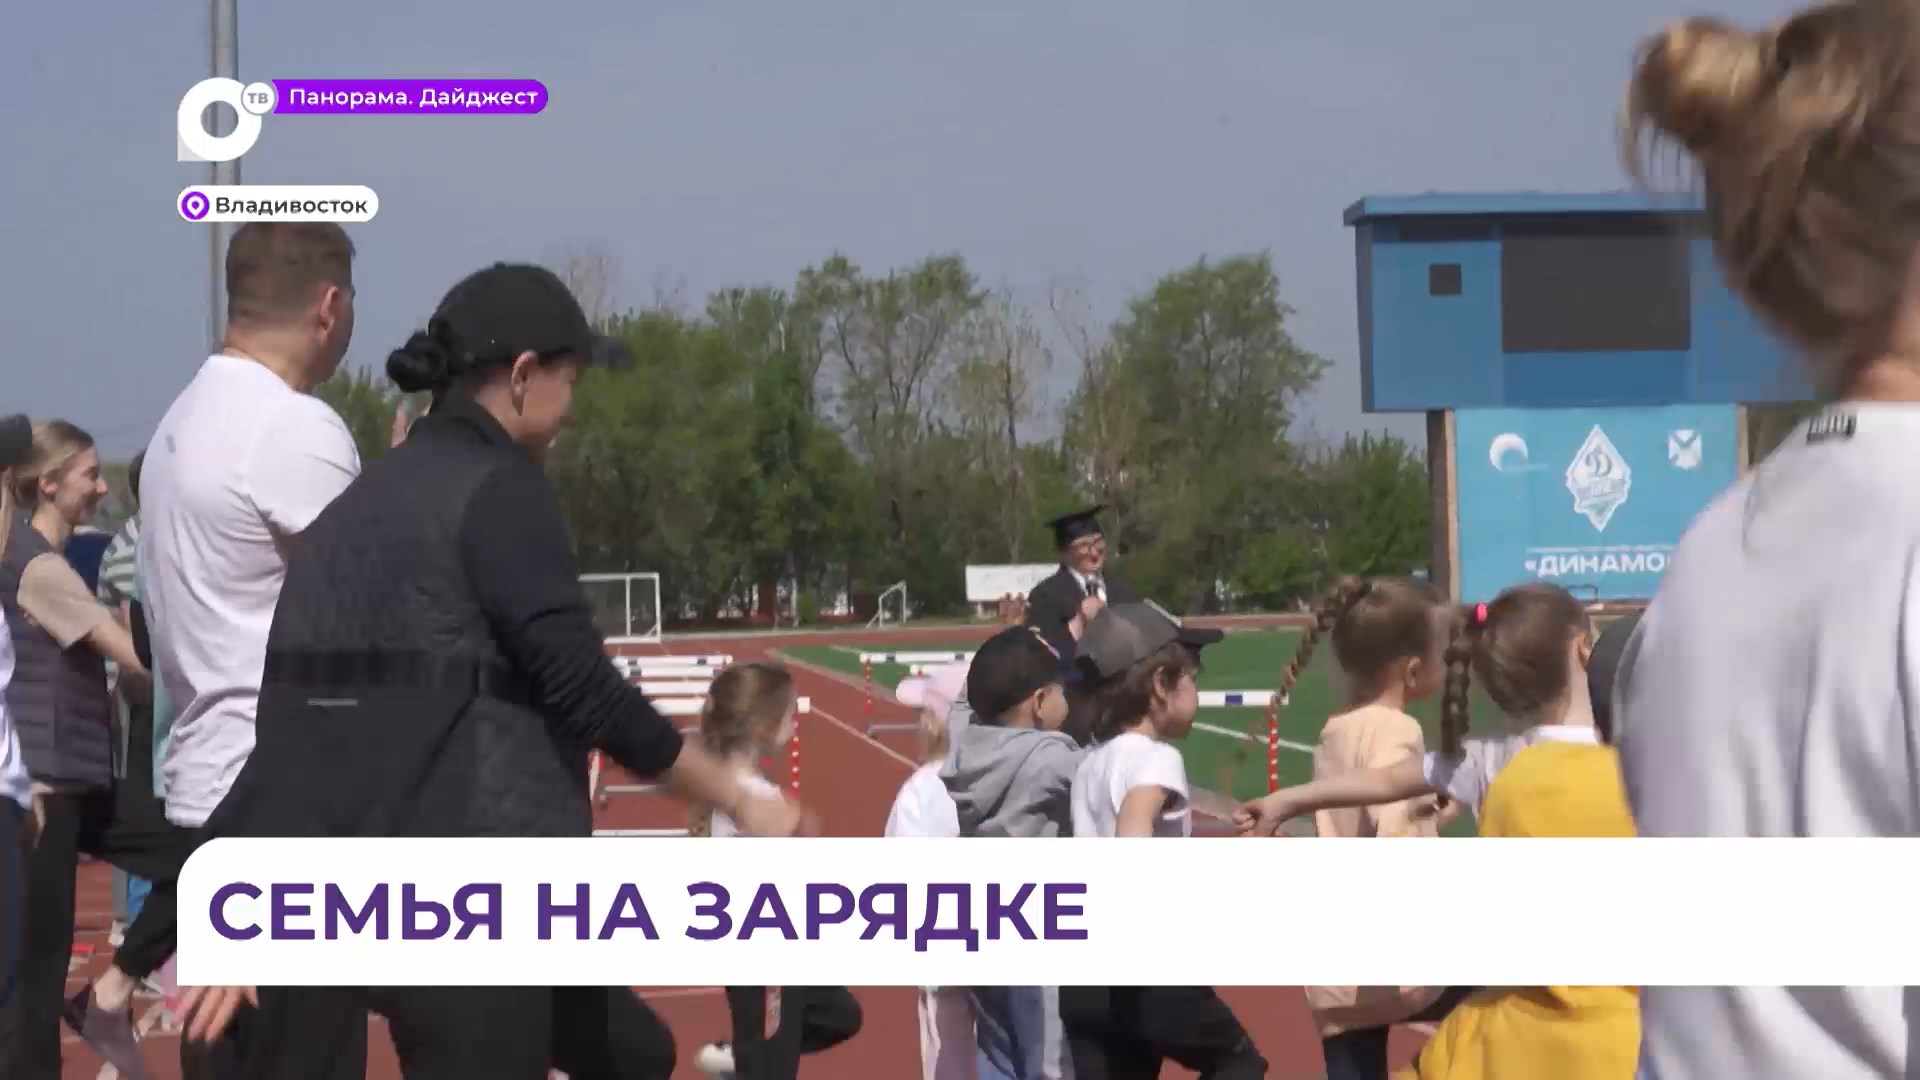 Весёлый спортивный праздник организовали для родителей и детей из детсада №4 Владивостока